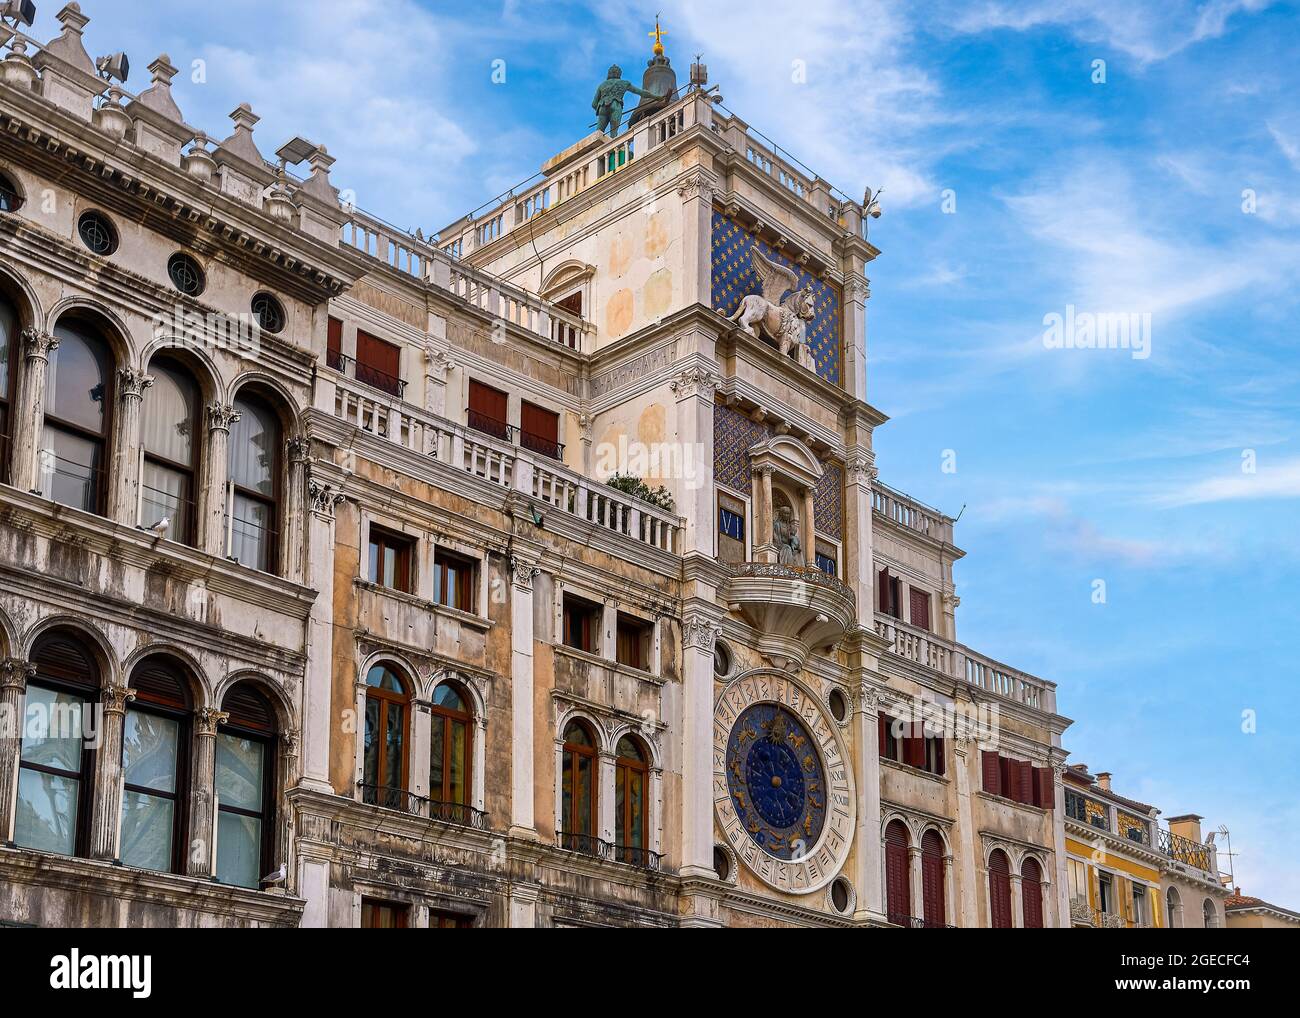 Berühmter Torre dell'Orologio oder Uhrturm auf dem Markusplatz in Venedig, Italien. Mauren, Löwe, Jungfrau Maria Skulpturen, mittelalterliche Uhr, blauer Himmel, Wolken. Stockfoto